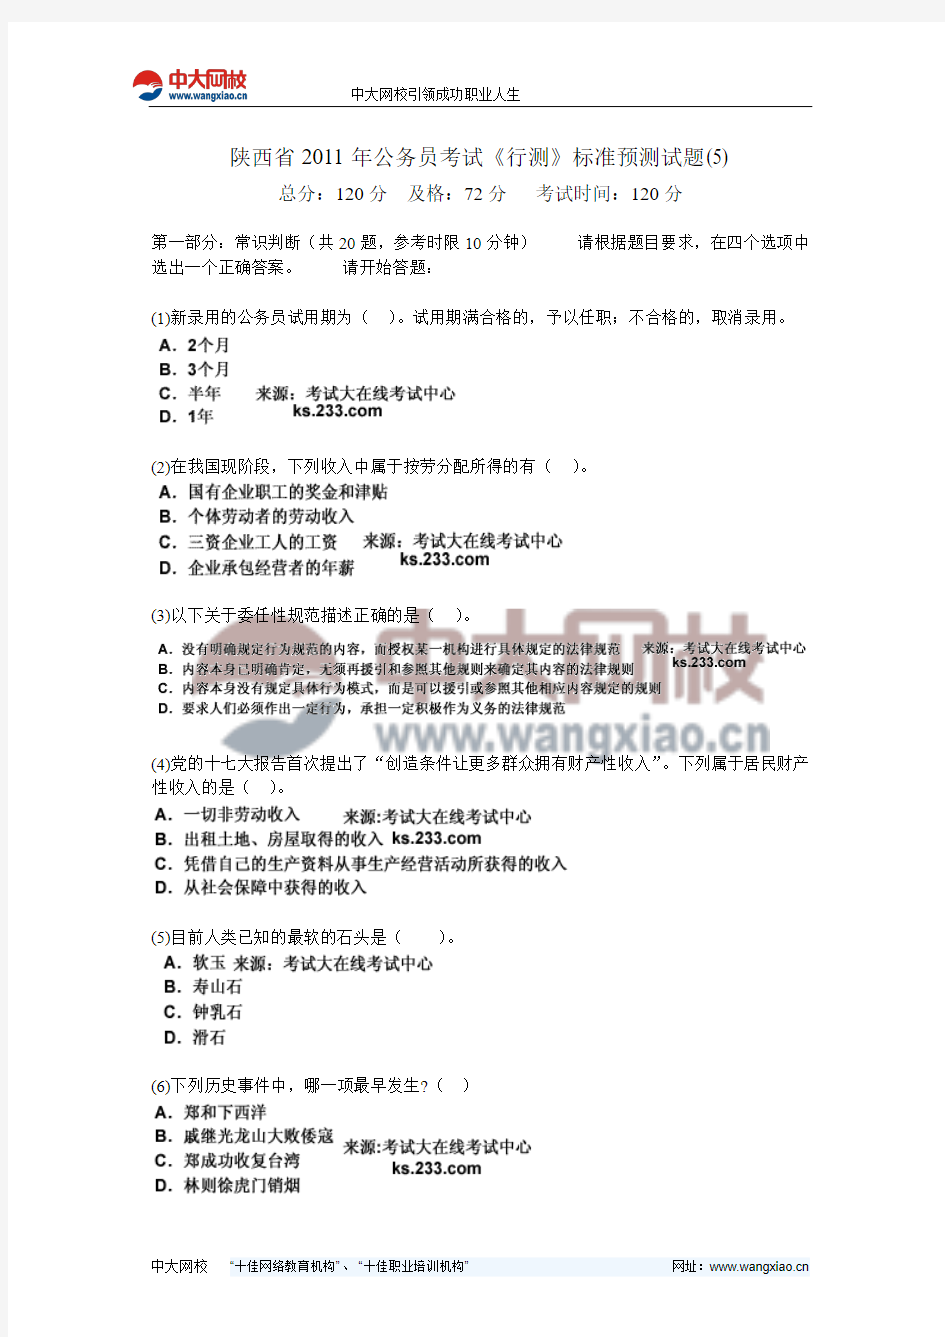 陕西省2011年公务员考试《行测》标准预测试题(5)-中大网校